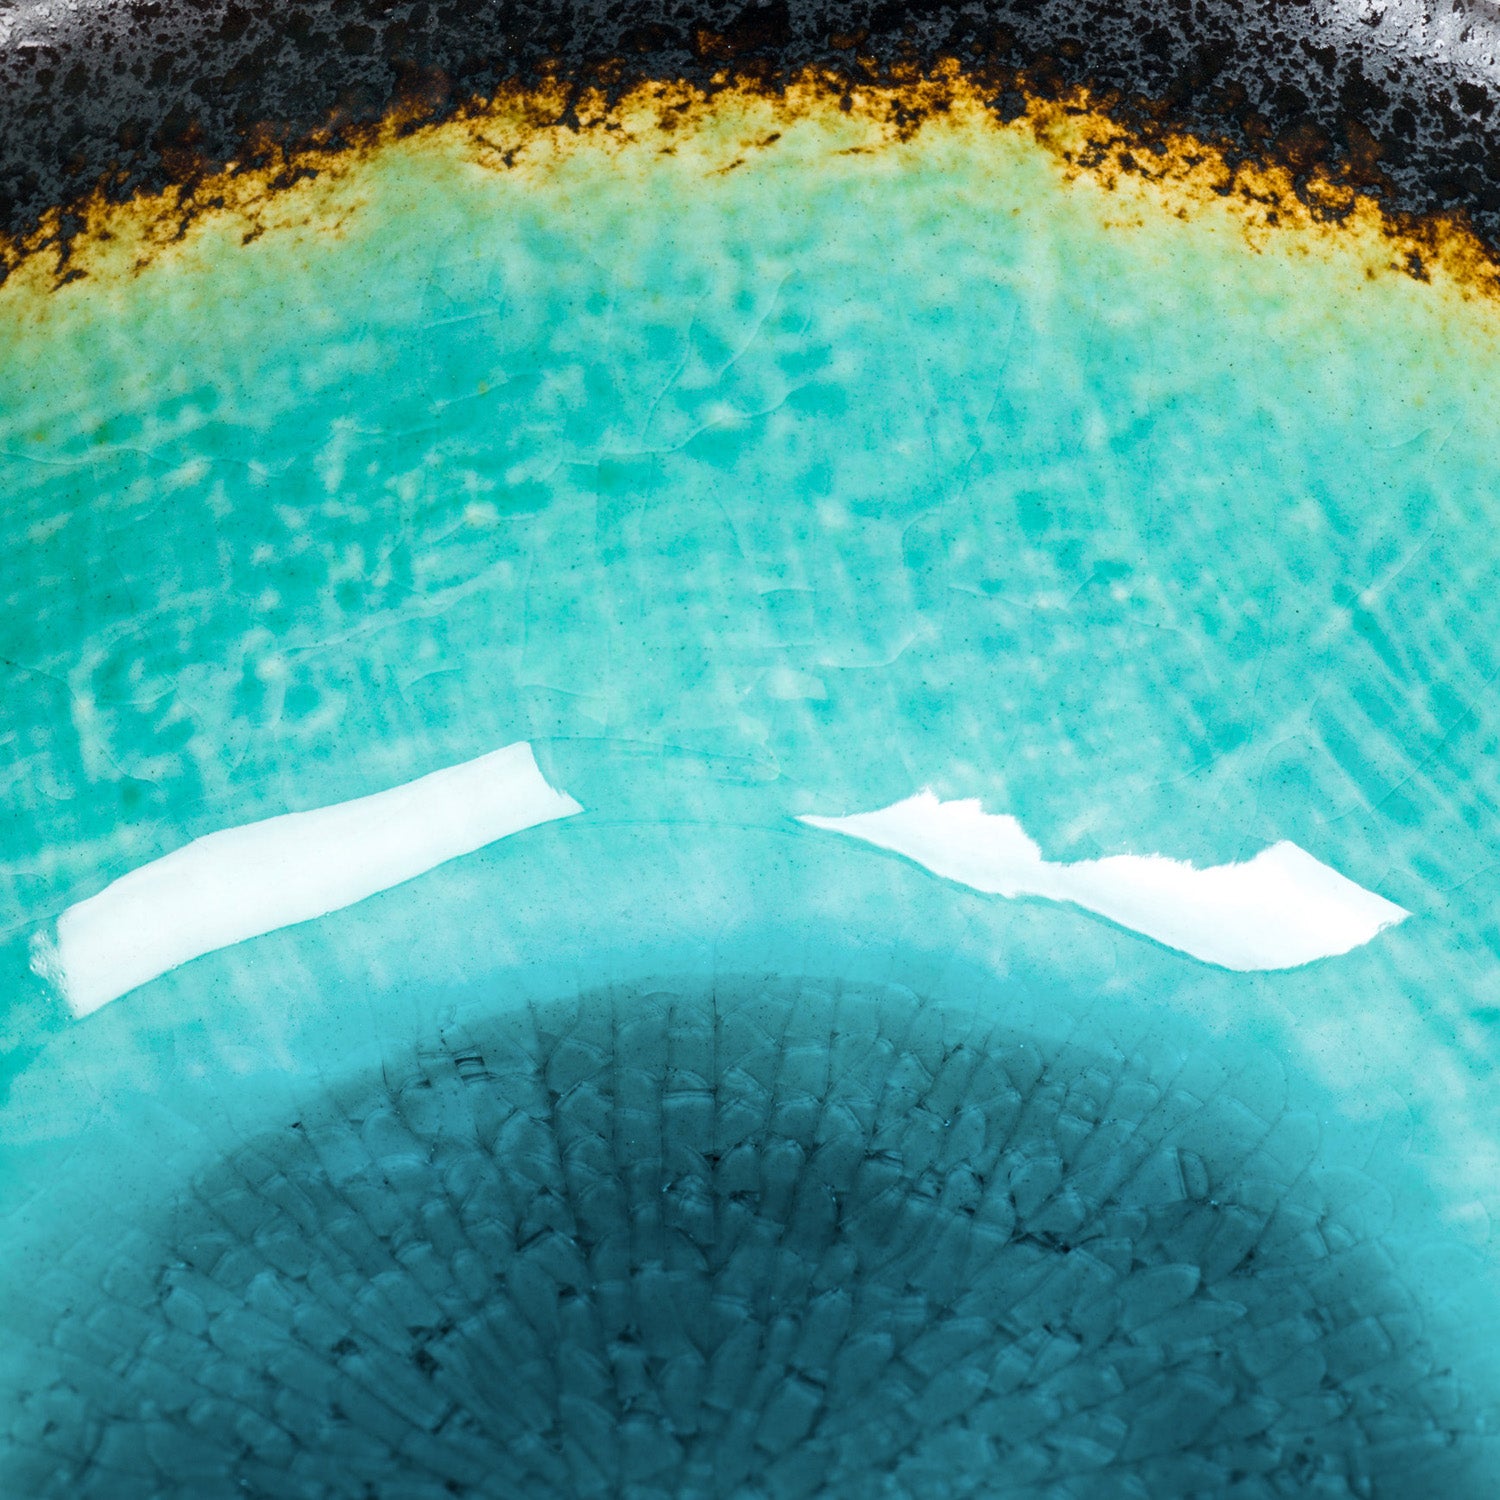 Turquoise Crackleglaze Japanese Bowl